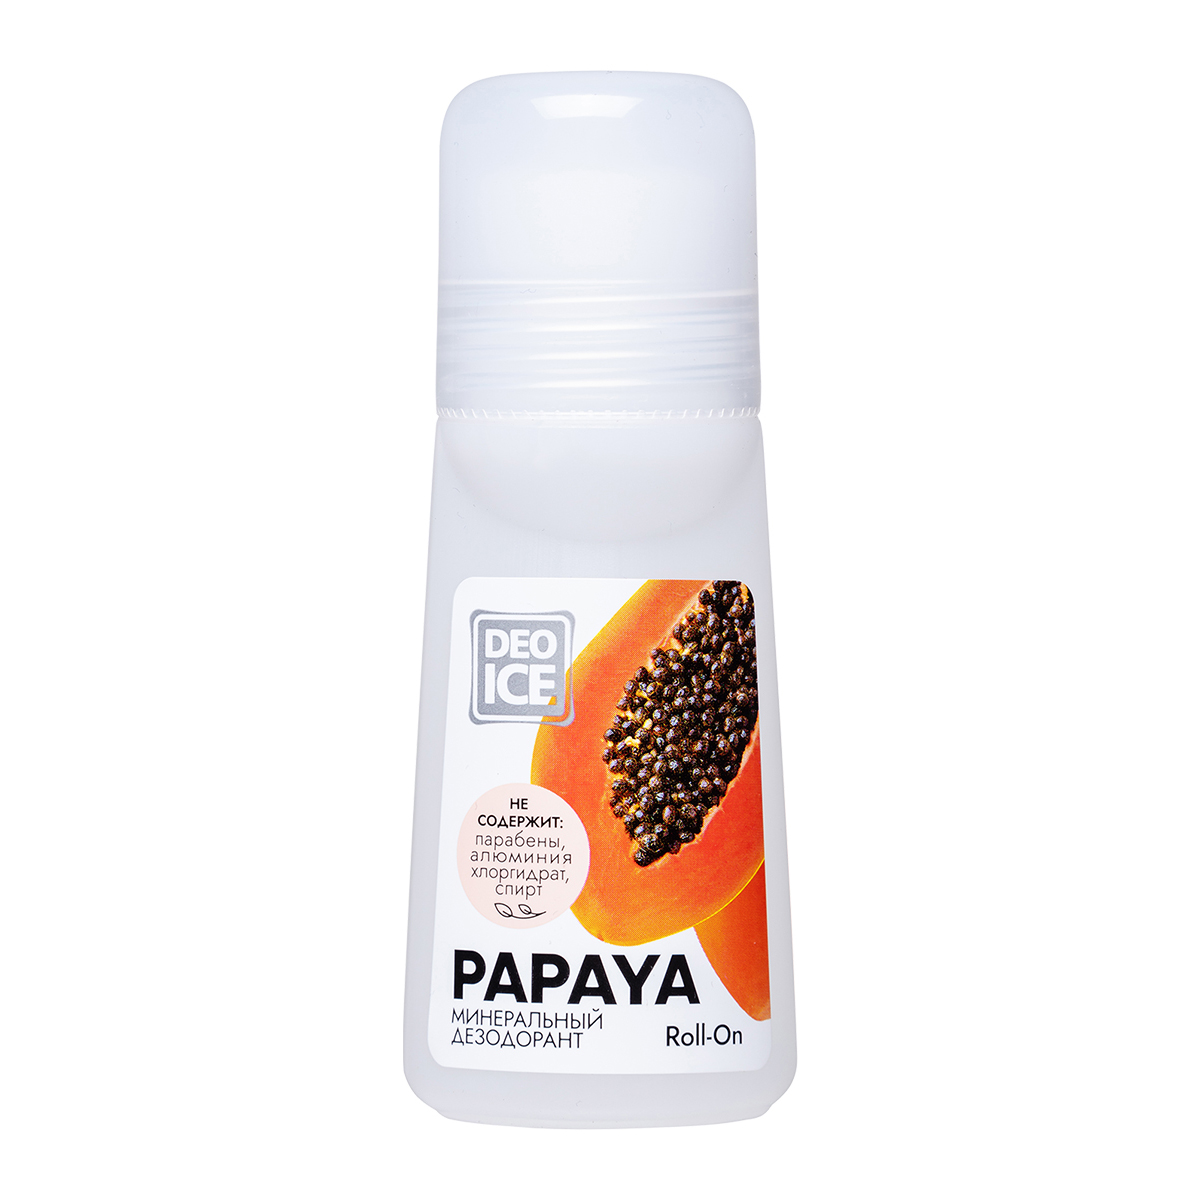 Дезодорант Deoice роликовый минеральный Roll-On Papaya 65 ml - фото 1